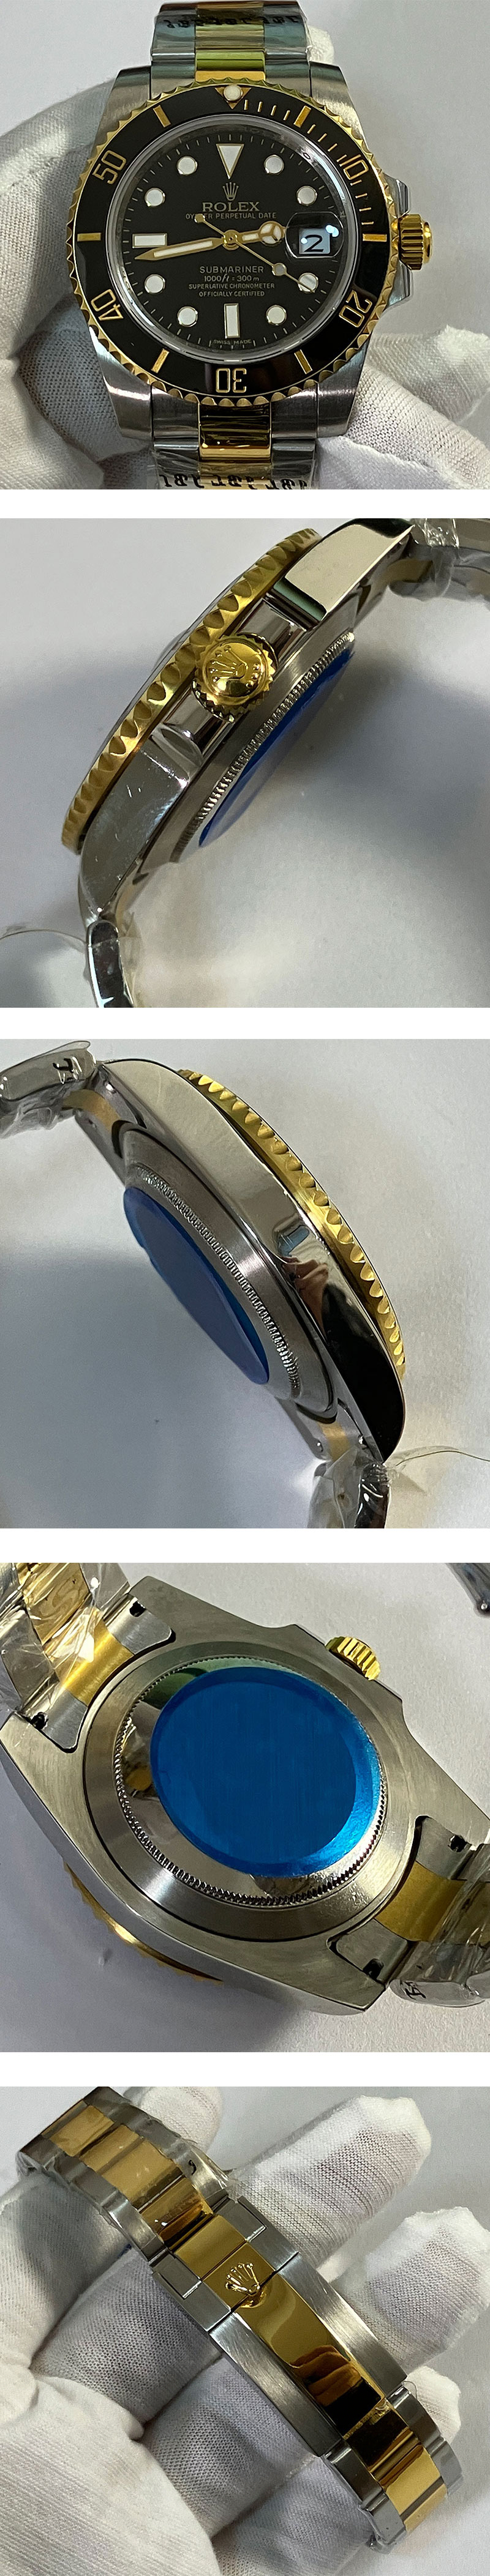 激安腕時計挑戦 サブマリーナーコピー時計 Ref.16613 BLK ロレックス最新作